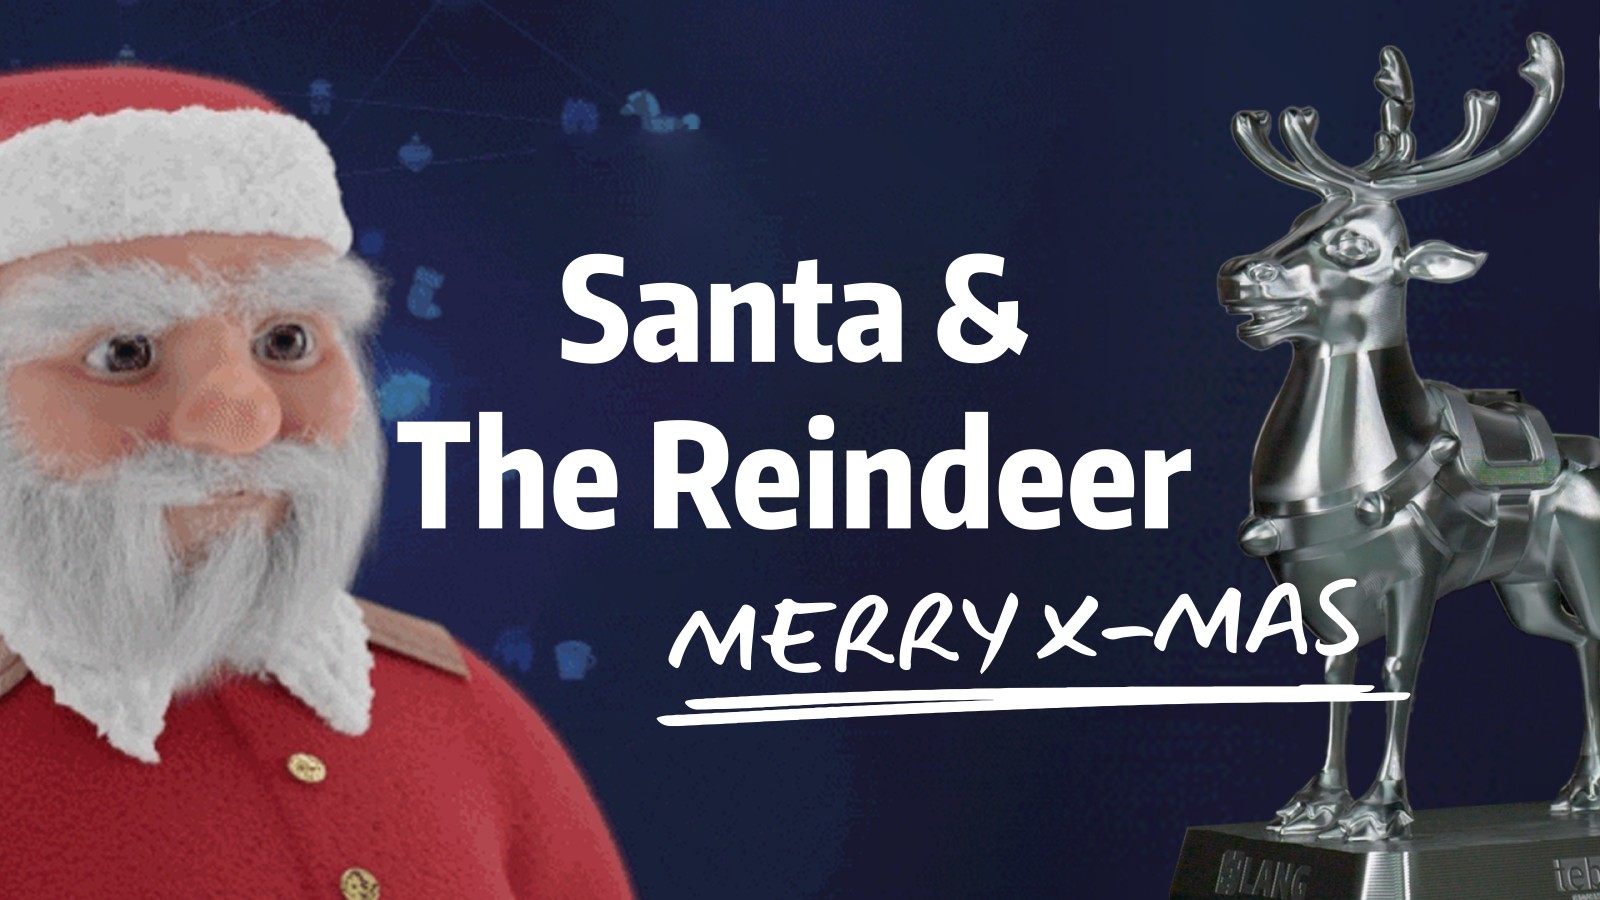 Merry Christmas - Tebsi the reindeer